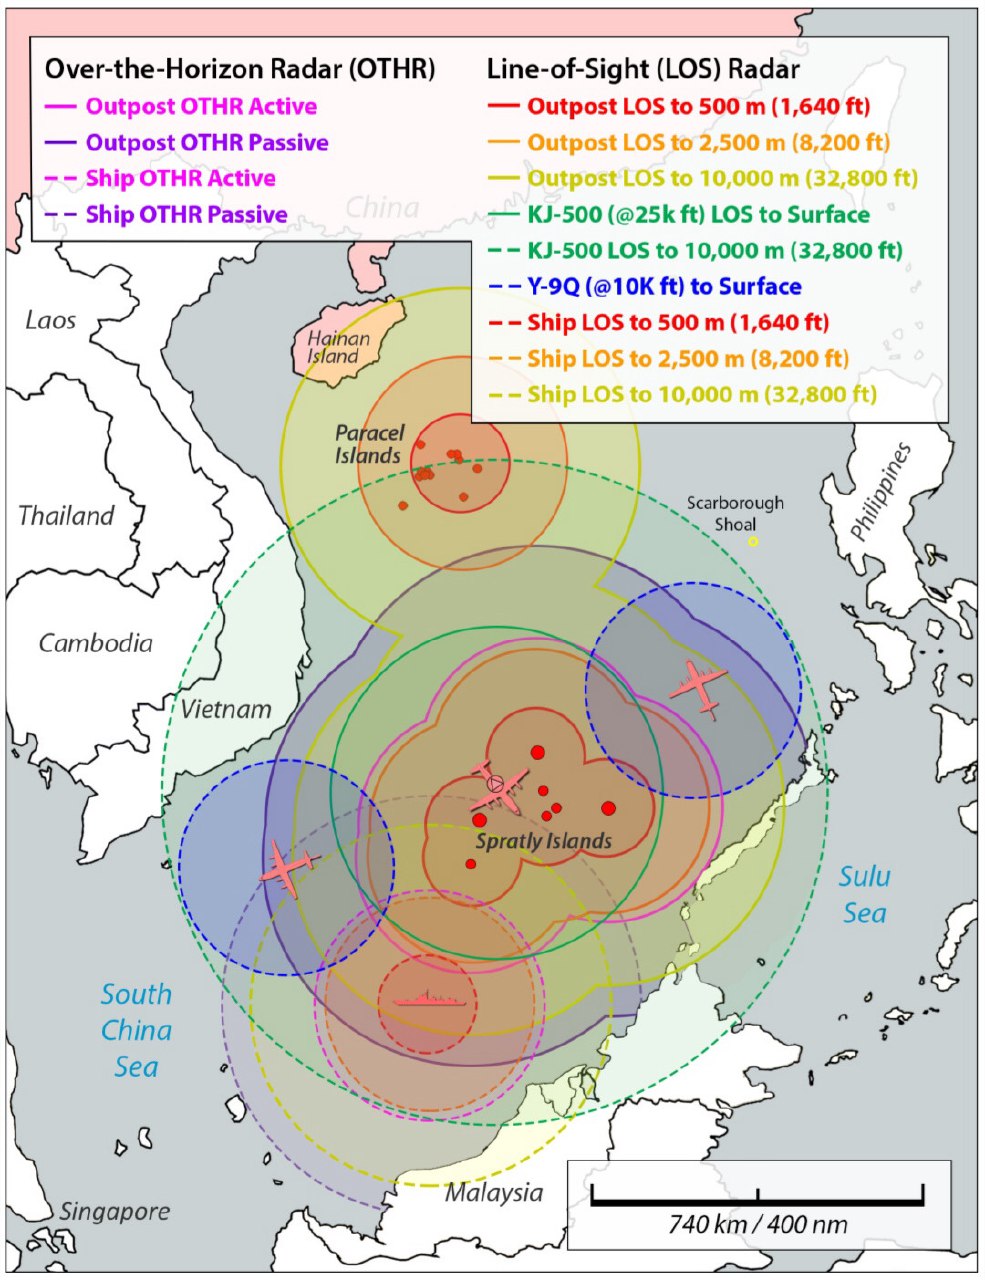 Potencjalne obszary działania różnych radarów PLA na Wyspach Spratly i Paracelskich na Morzu Południowochińskim